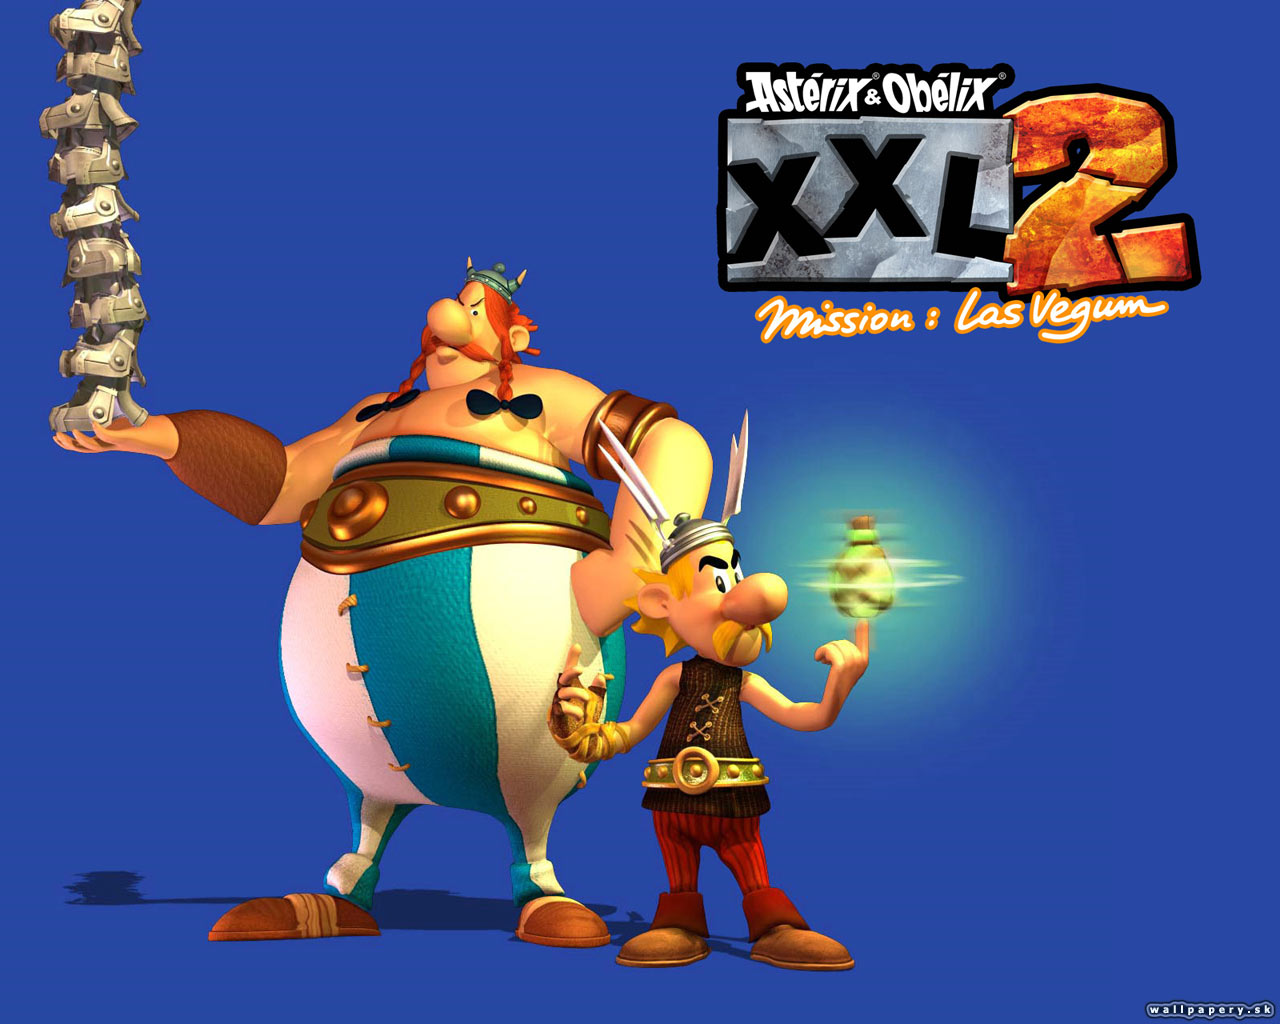 Asterix & Obelix XXL 2: Mission Las Vegum - wallpaper 7